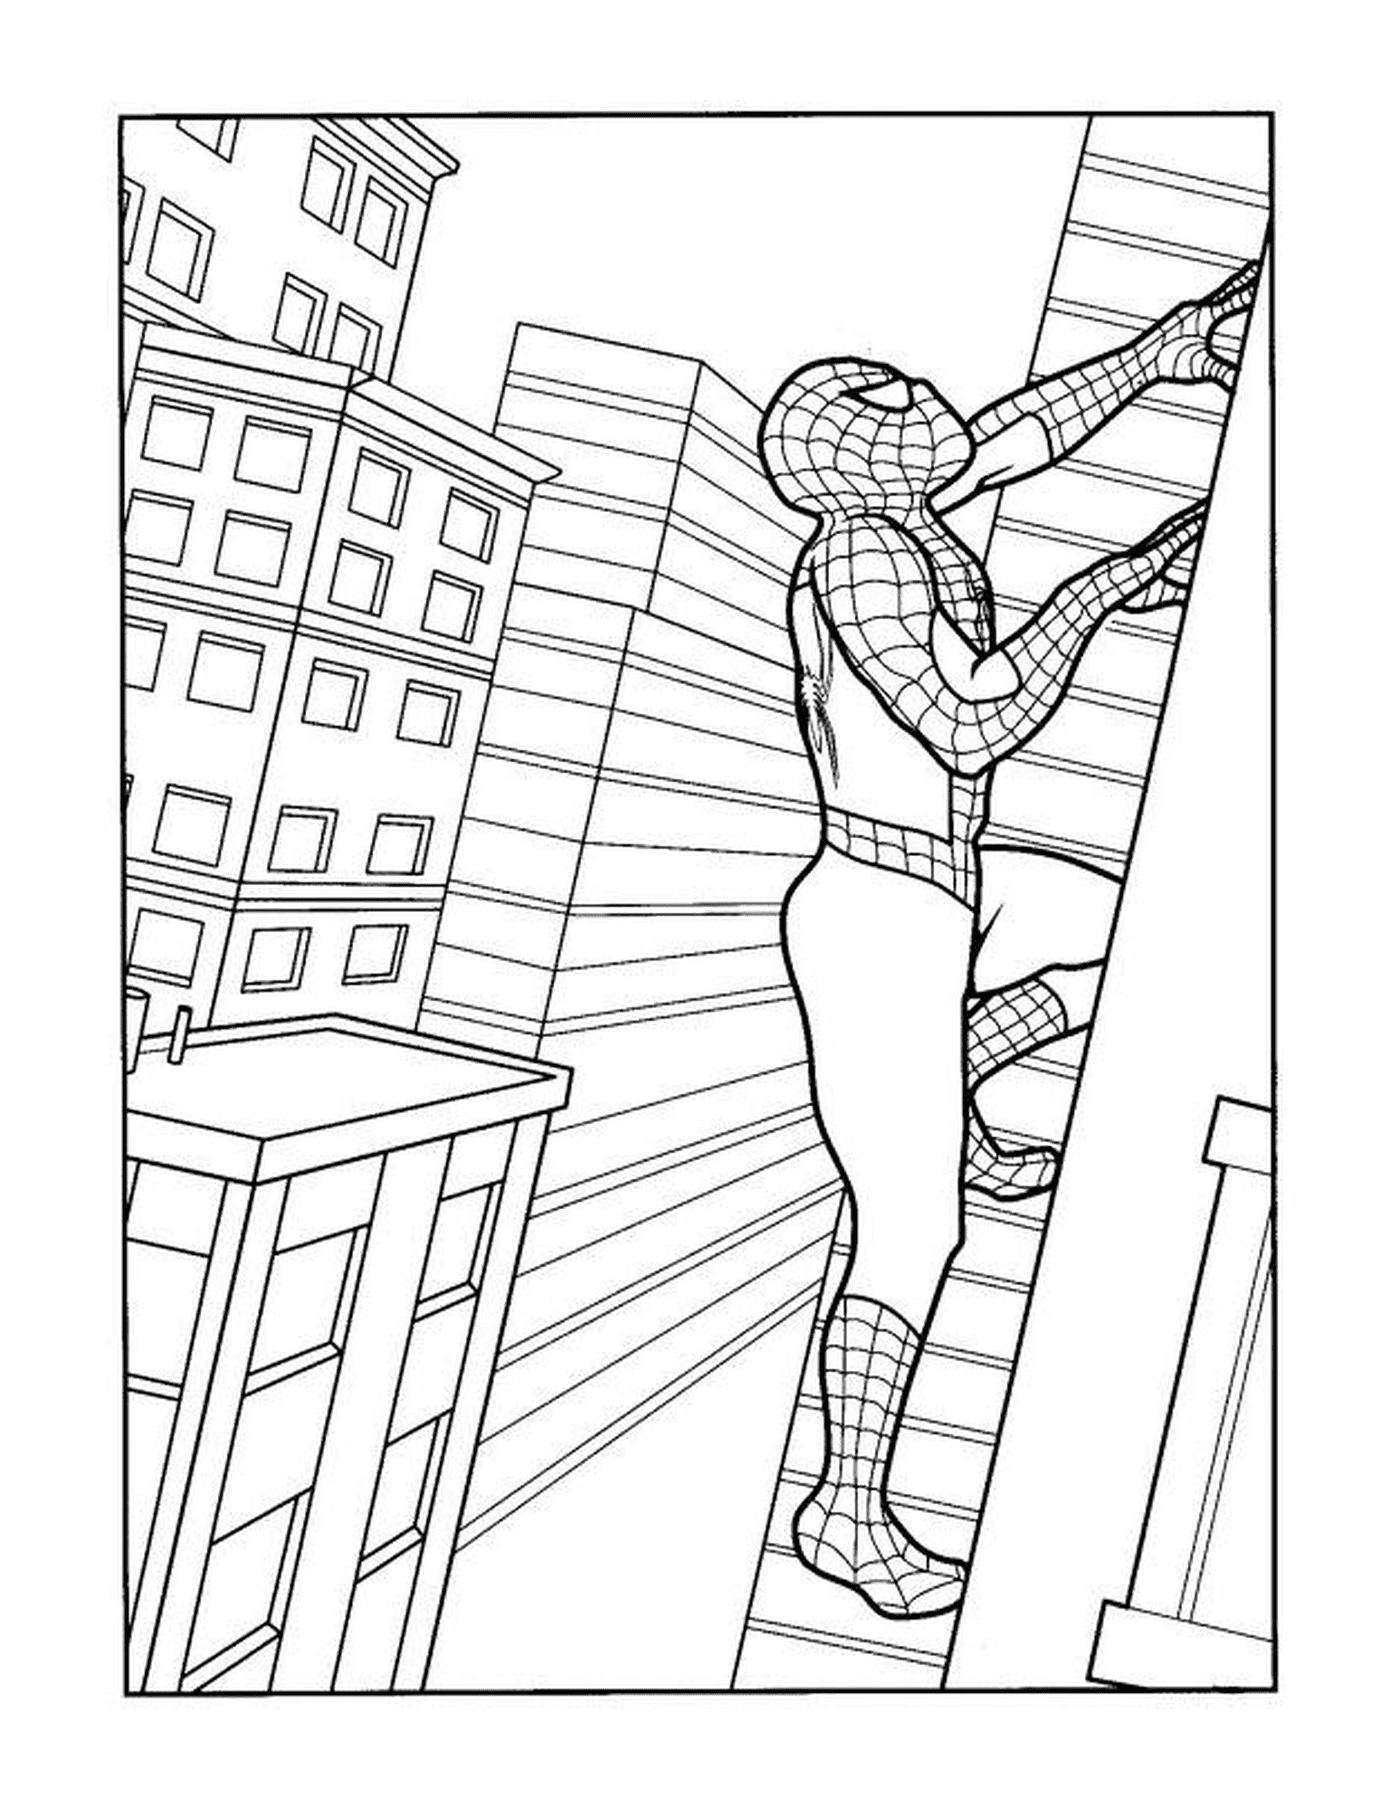   Spiderman escaladant un mur d'immeuble 